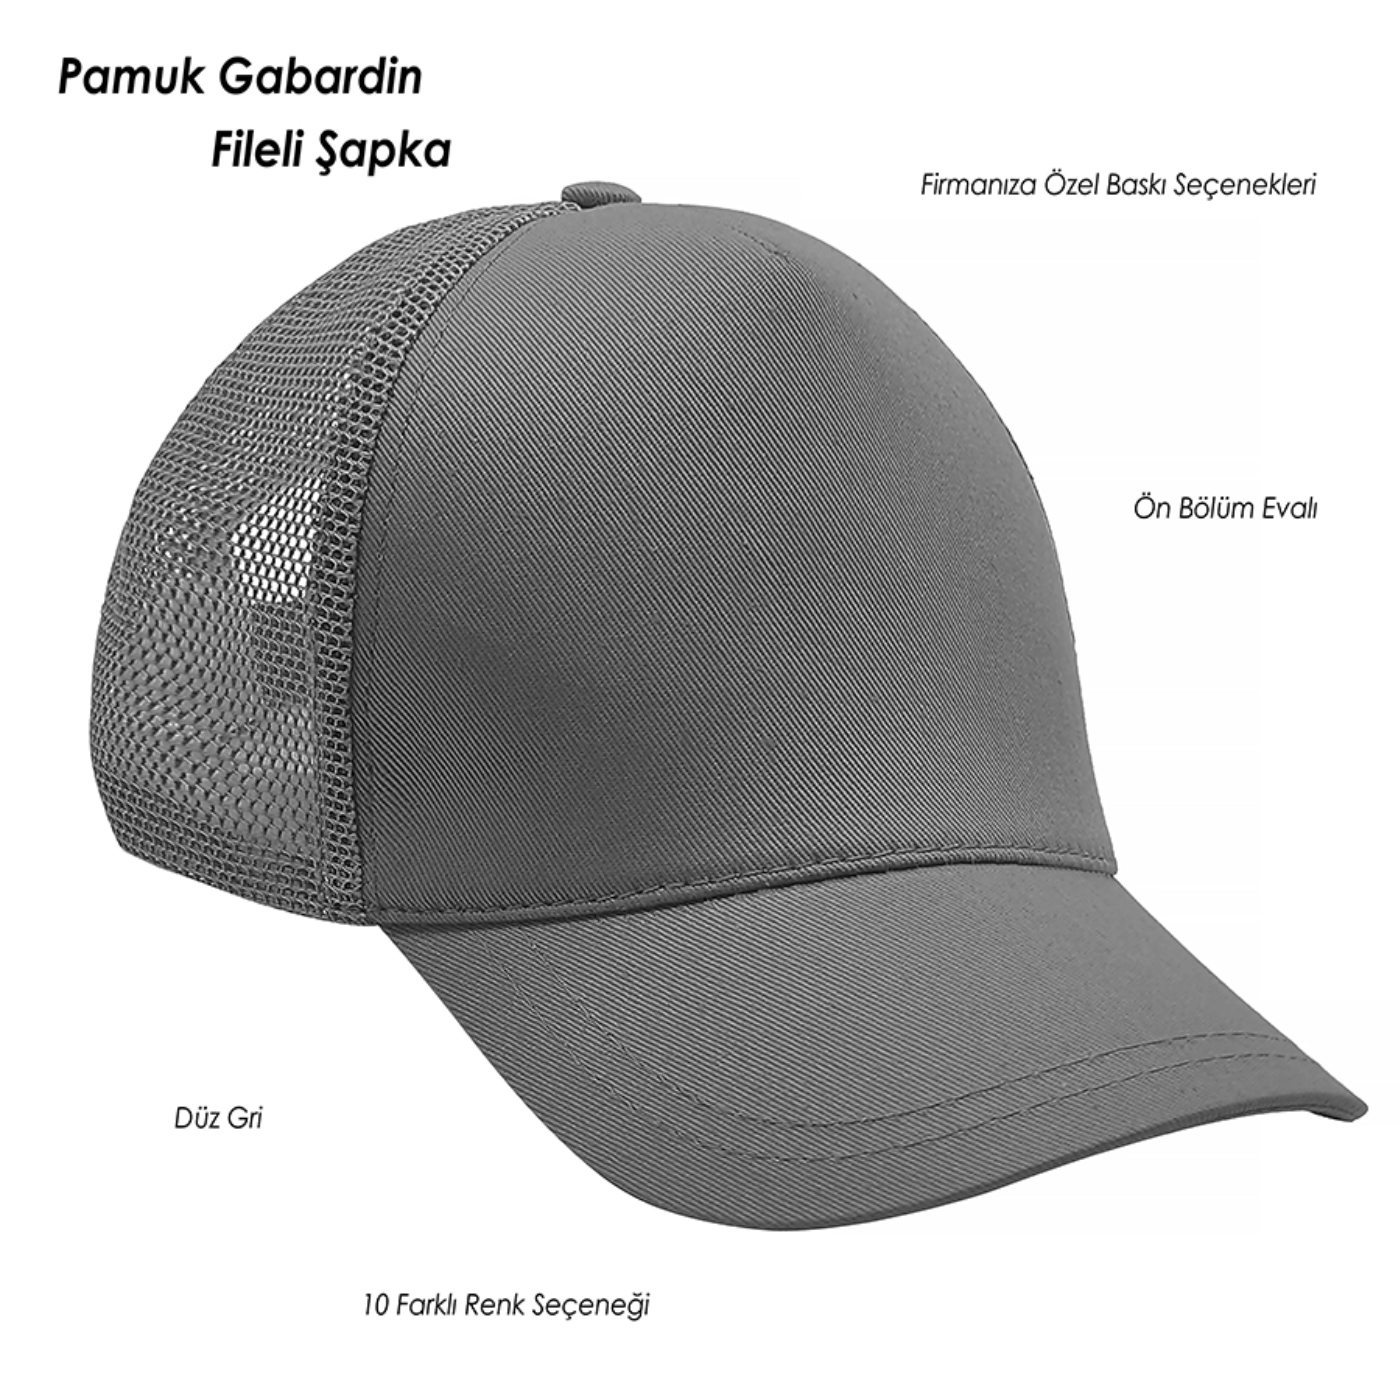 Pamuk Gabardin Fileli Şapka